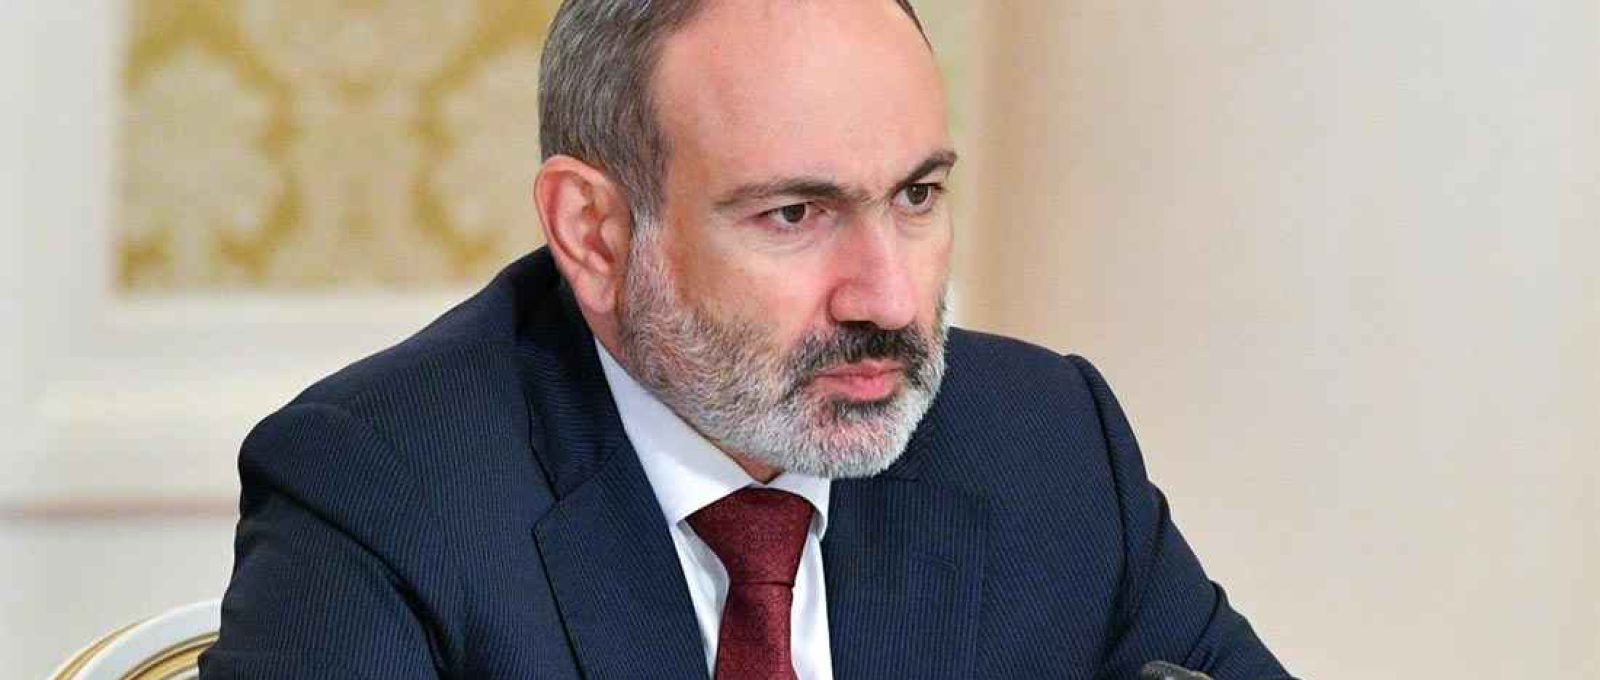 O primeiro-ministro interino da Armênia, Nikol Pashinyan (Foto: Alexander Astafyev/Sputnik/Reuters).